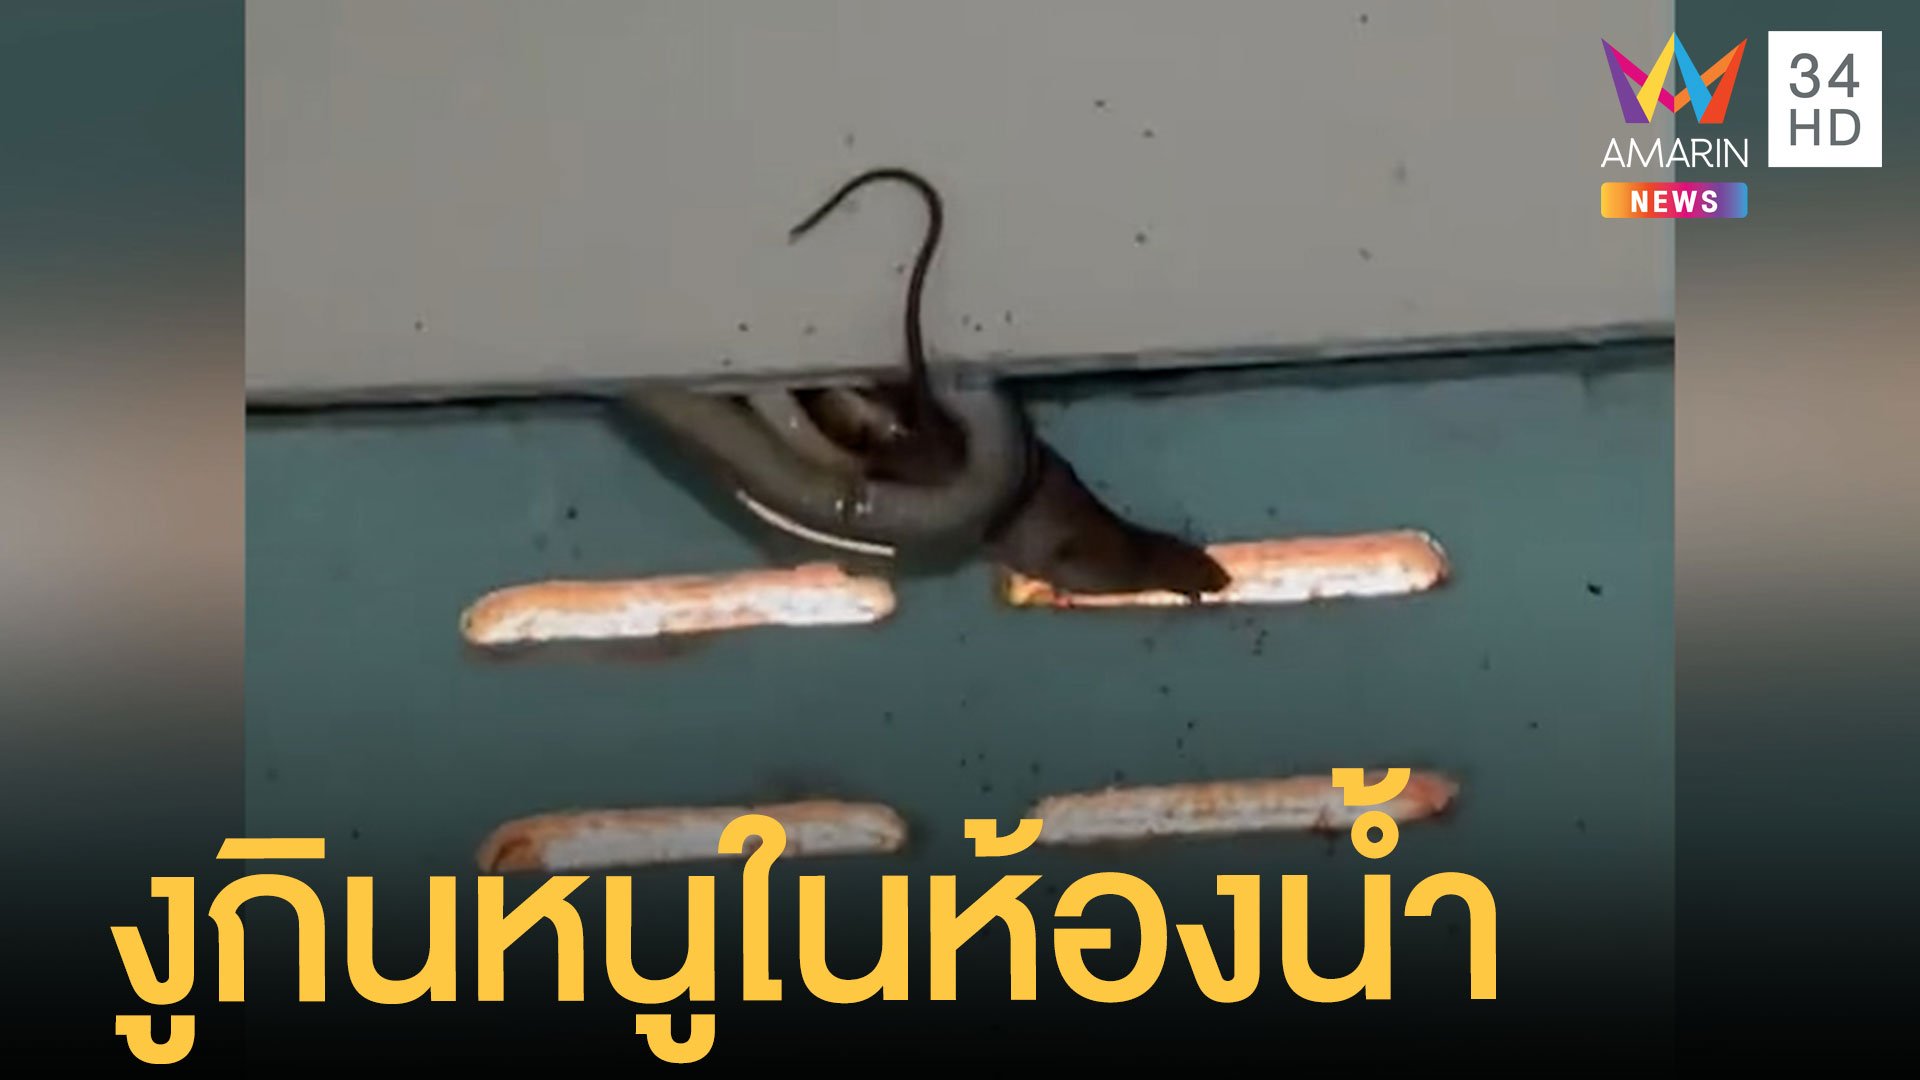 สาวสุดสะพรึ่งนั่งอึ งูบุกกินหนูในห้องน้ำ | ข่าวอรุณอมรินทร์ | 21 ก.ย. 64 | AMARIN TVHD34